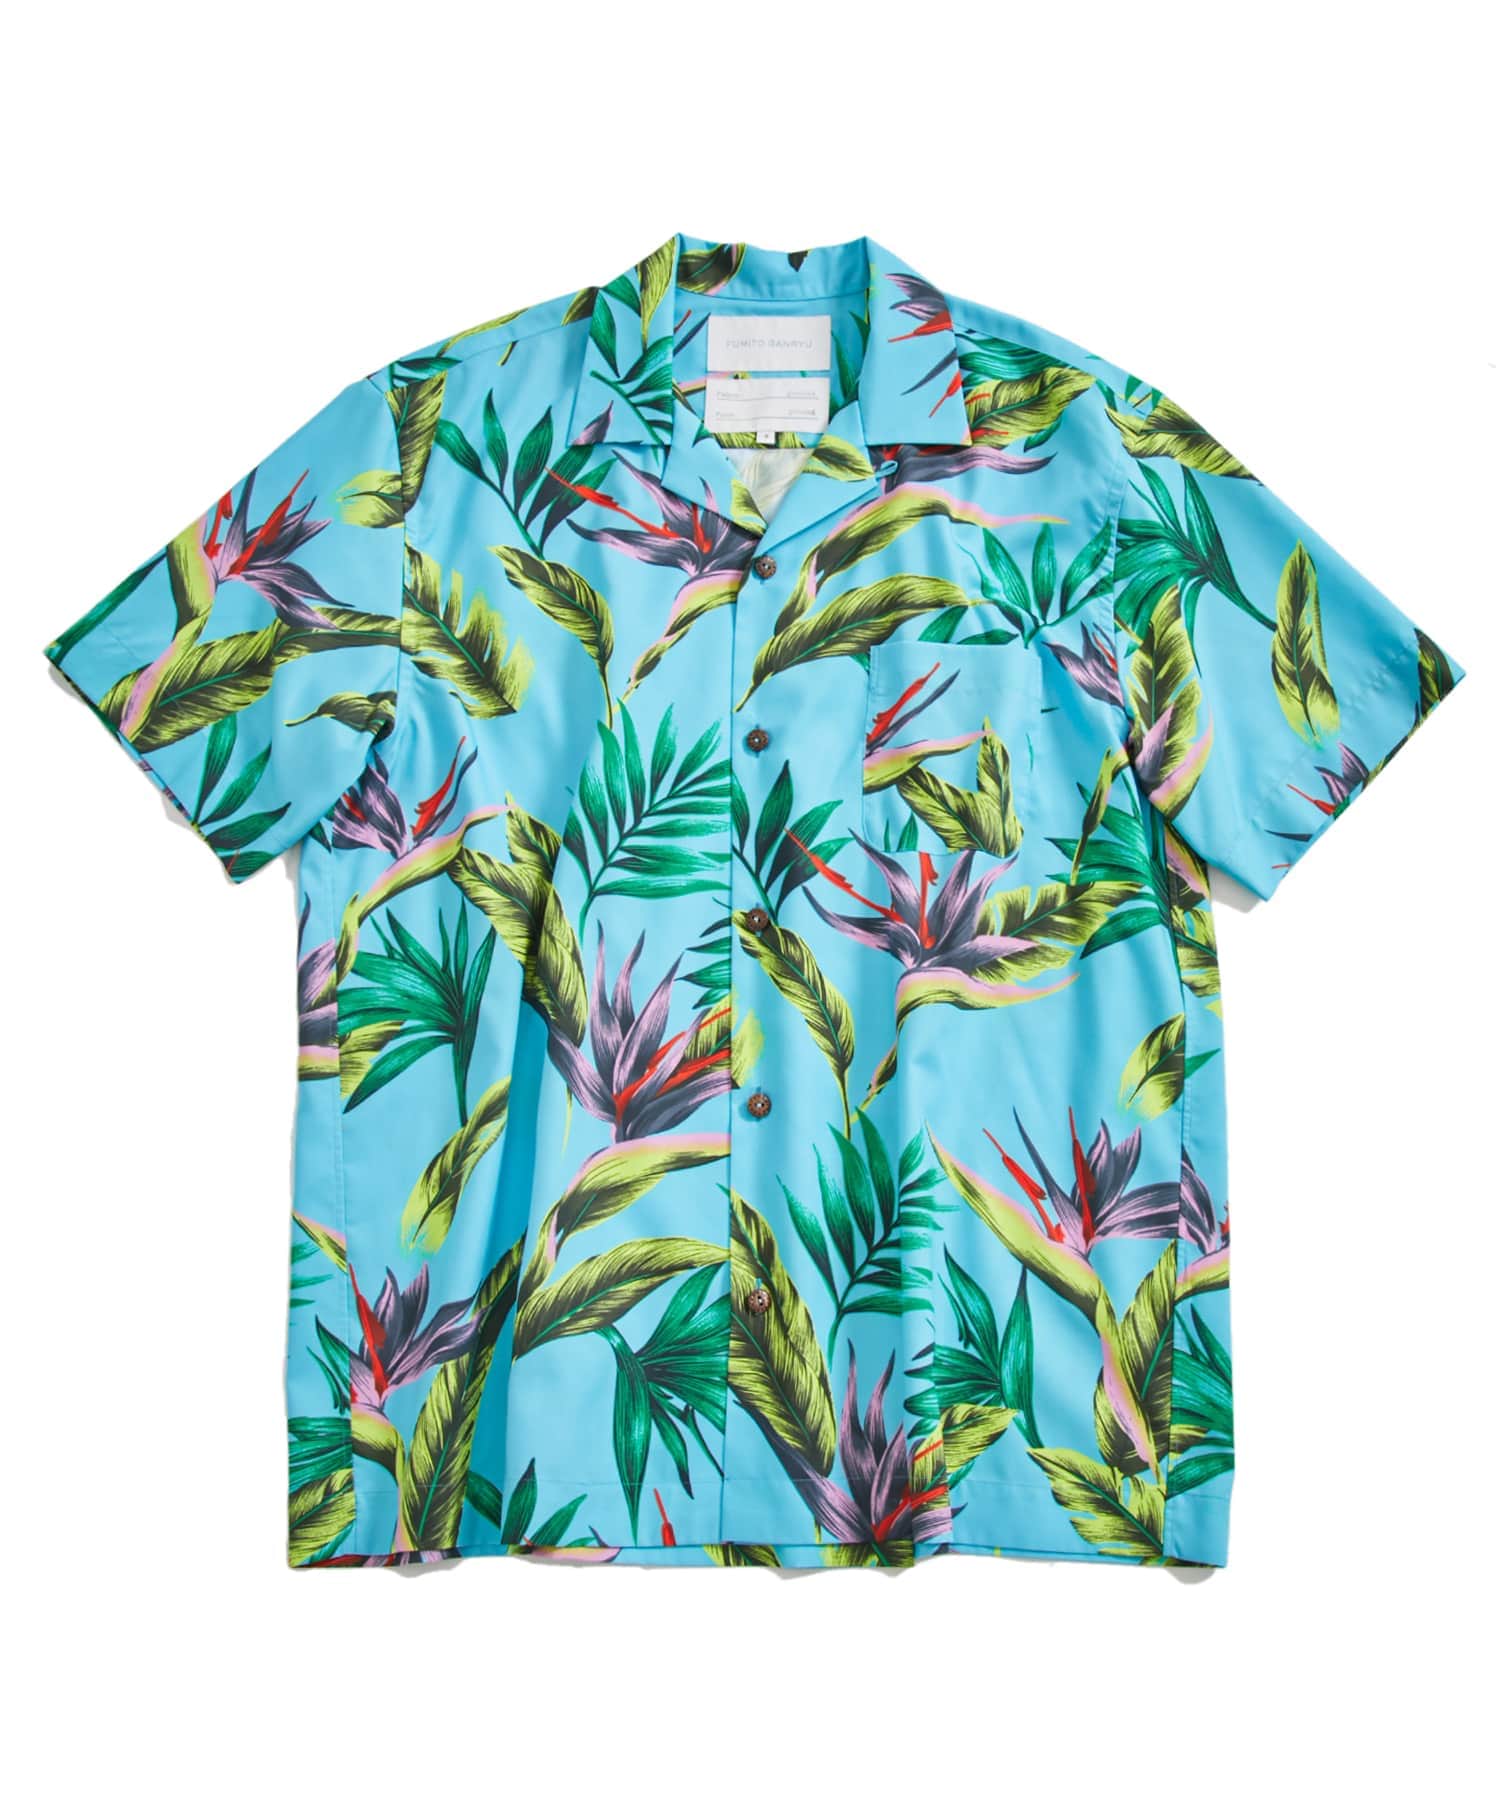 EX.Watteau pleats Hawaian shirt | FUMITO GANRYU